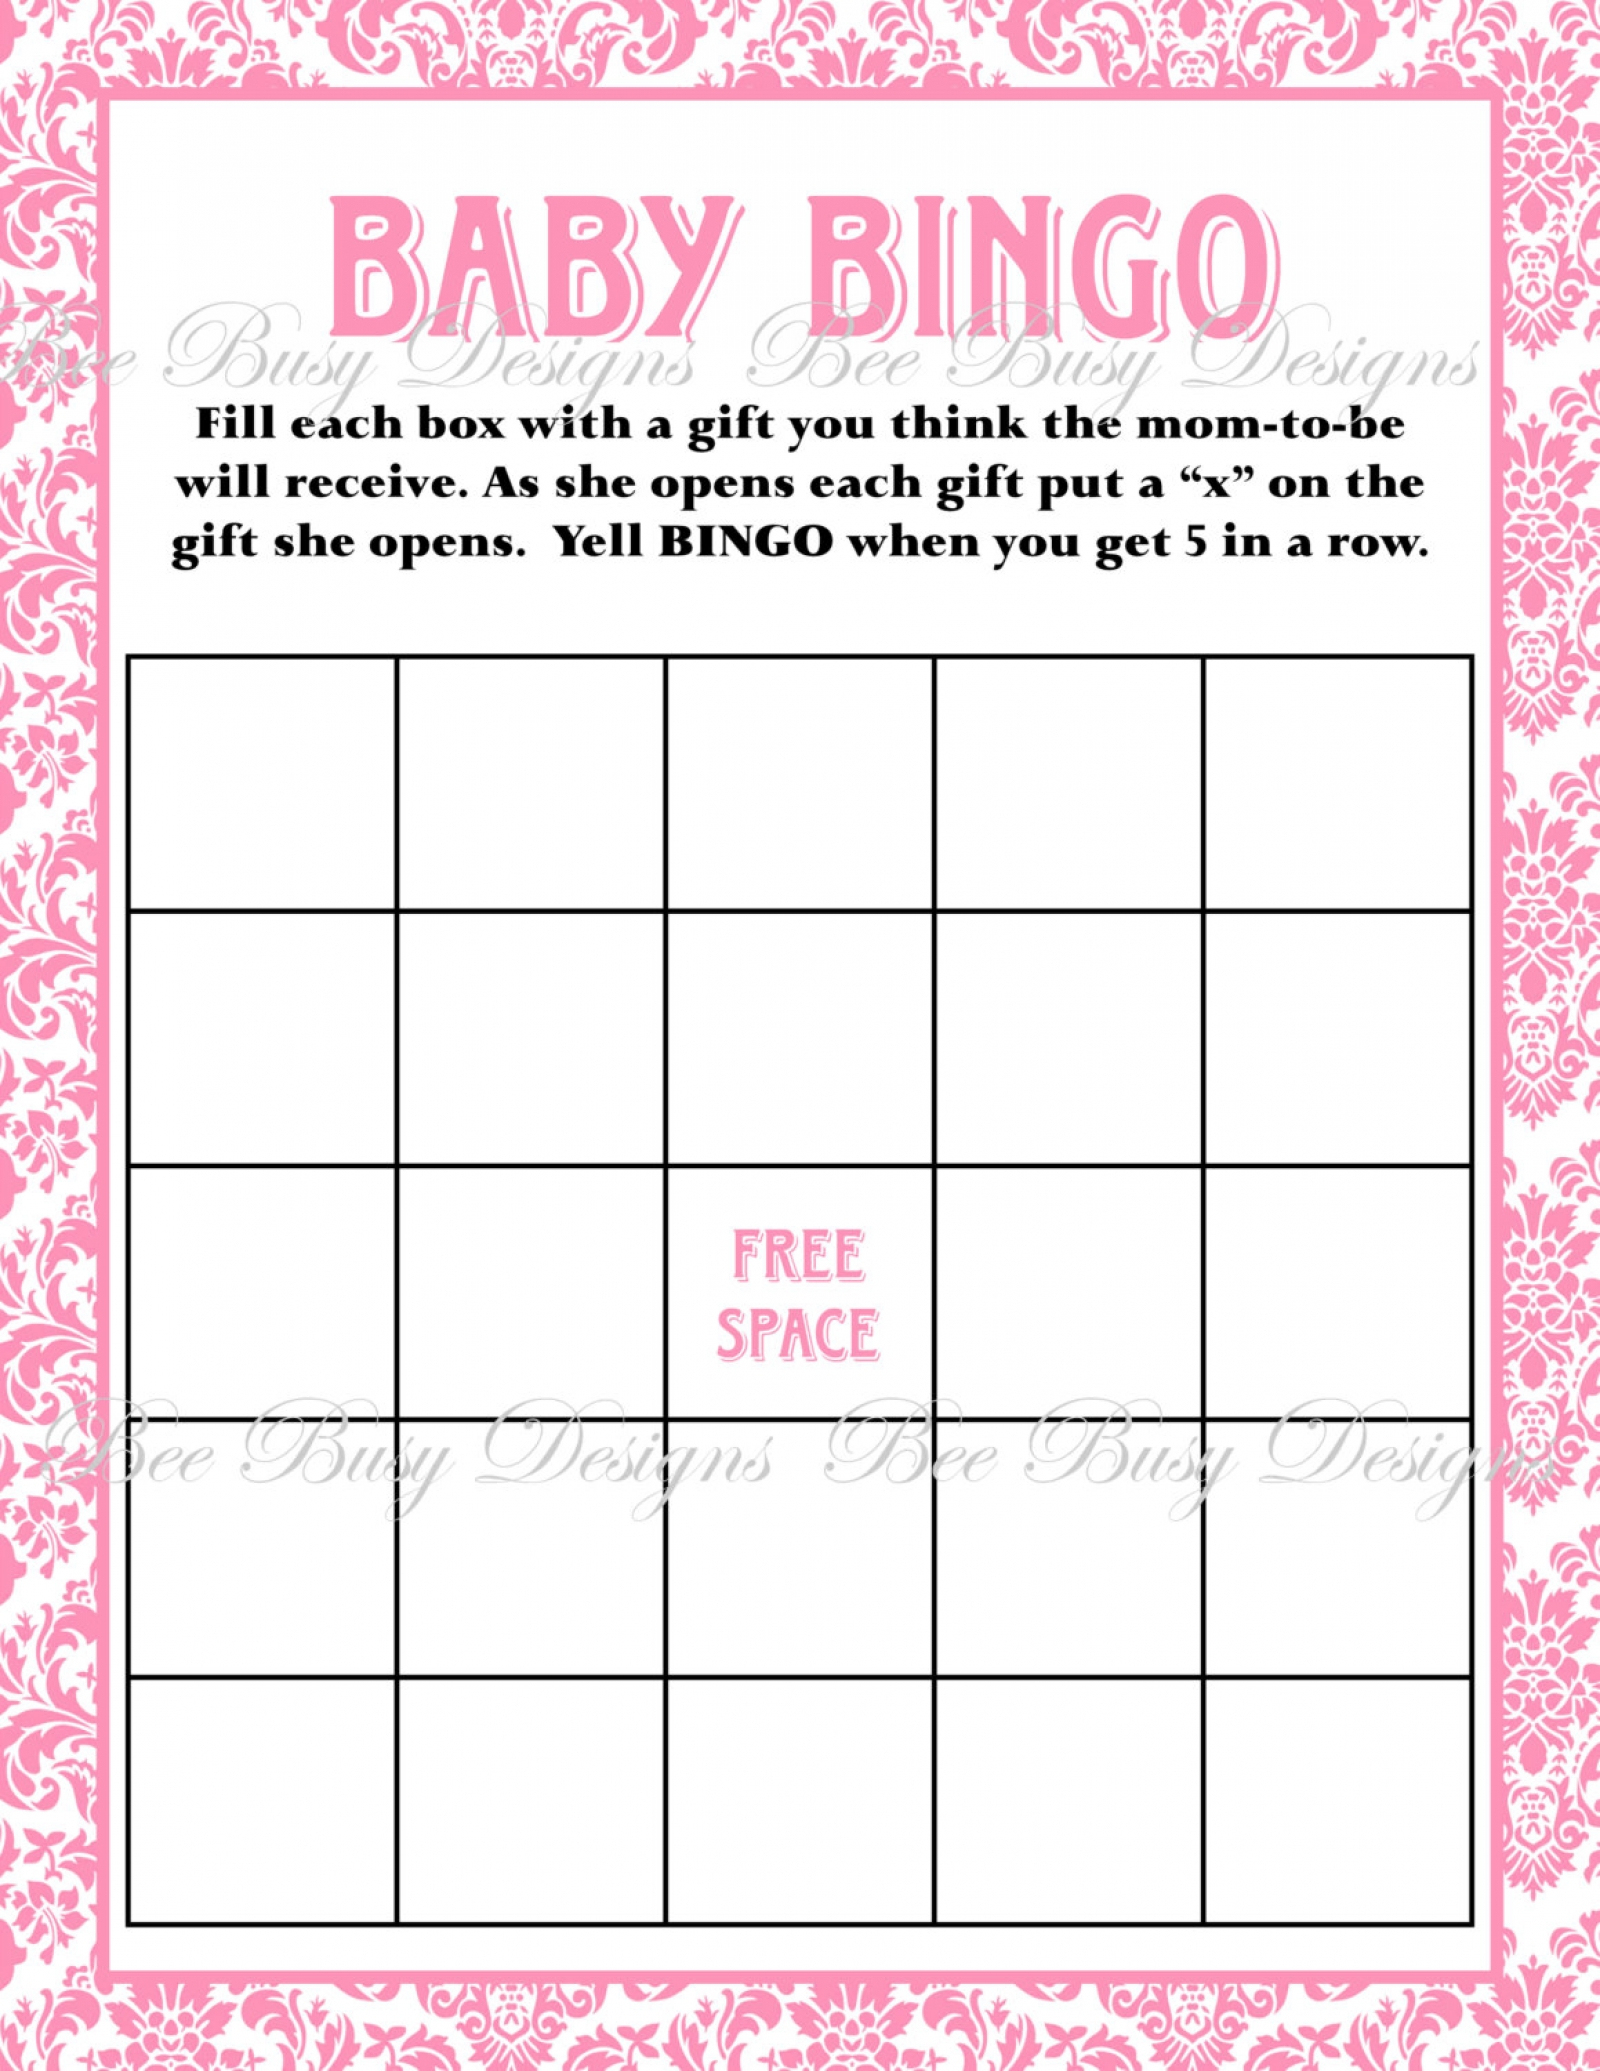 Printable Pink Damask Baby Shower Bingo Game Instant Download | Bee - Printable Baby Shower Bingo Games Free